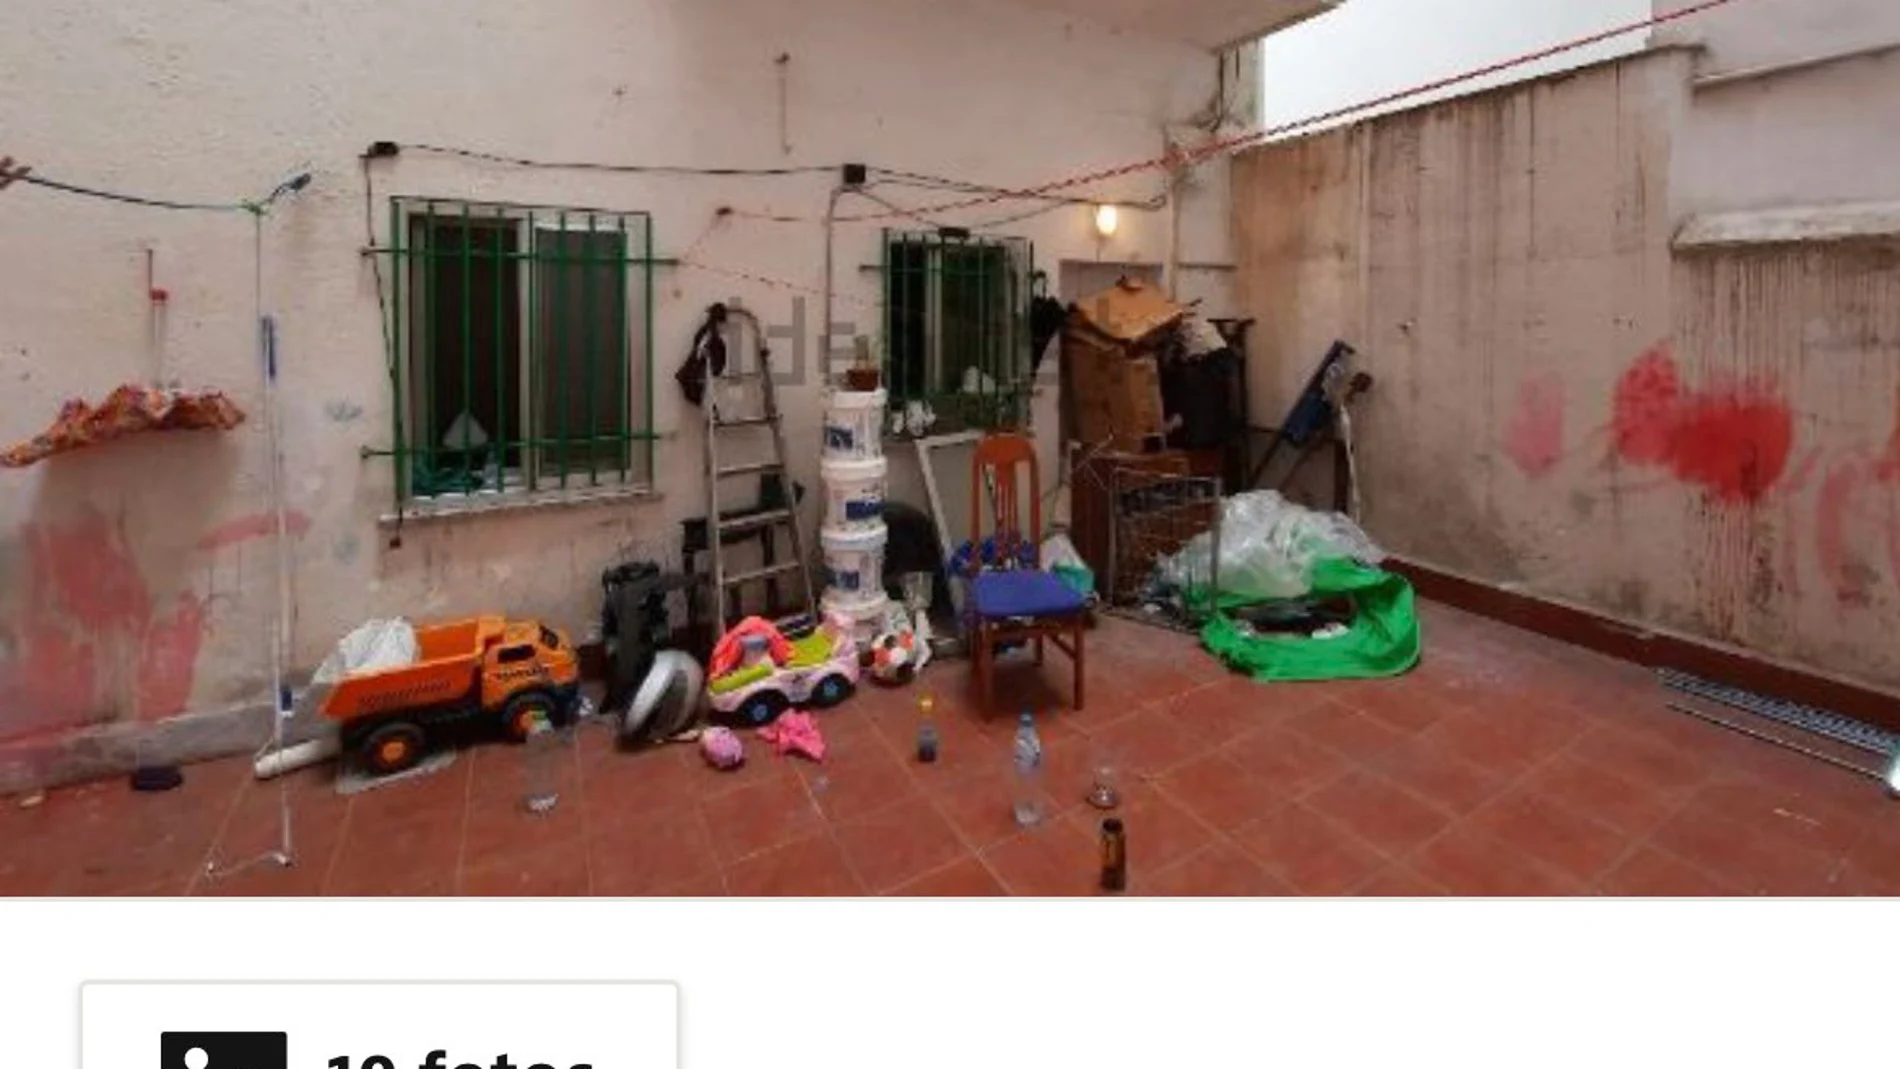 Sale a la venta en Idealista el piso de la última familia desahuciada en Vallecas menos de un día después